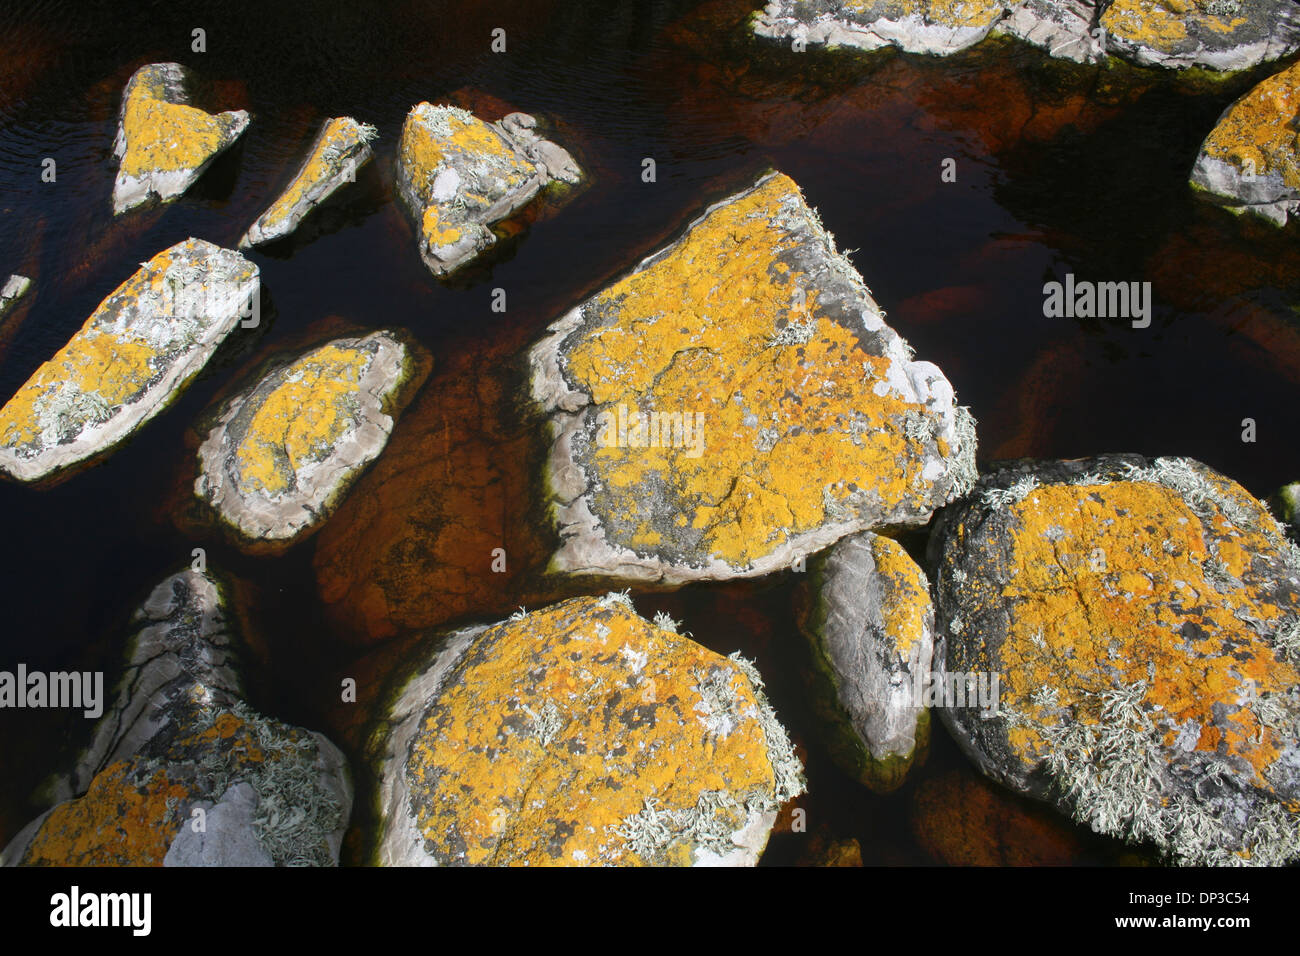 La turba, el ramo de musgo Sphagnum, sobre rocas subterráneas. España  Fotografía de stock - Alamy